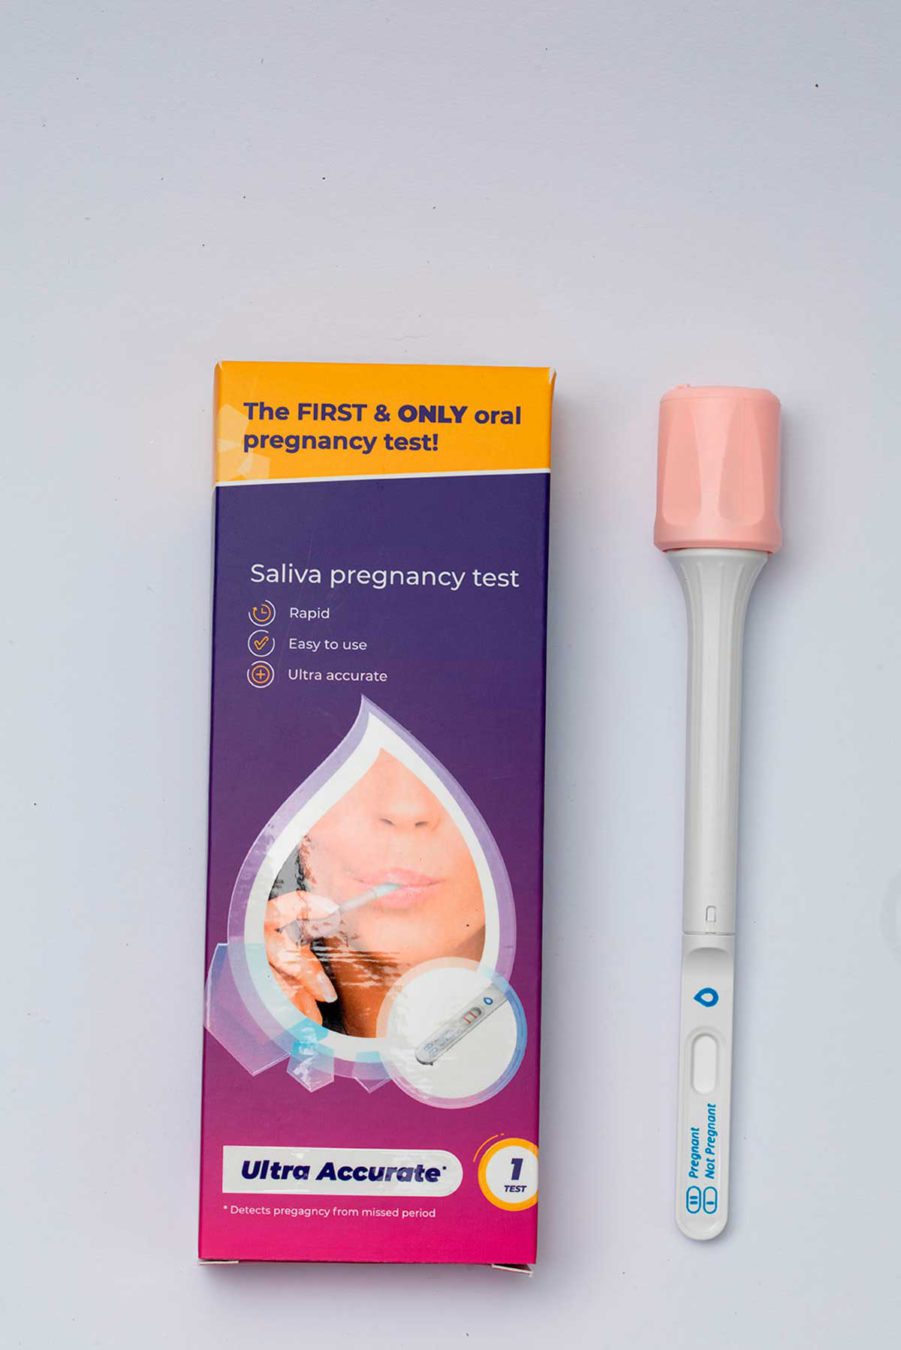 Empresa israelí lanza el primer test de embarazo basado en la saliva